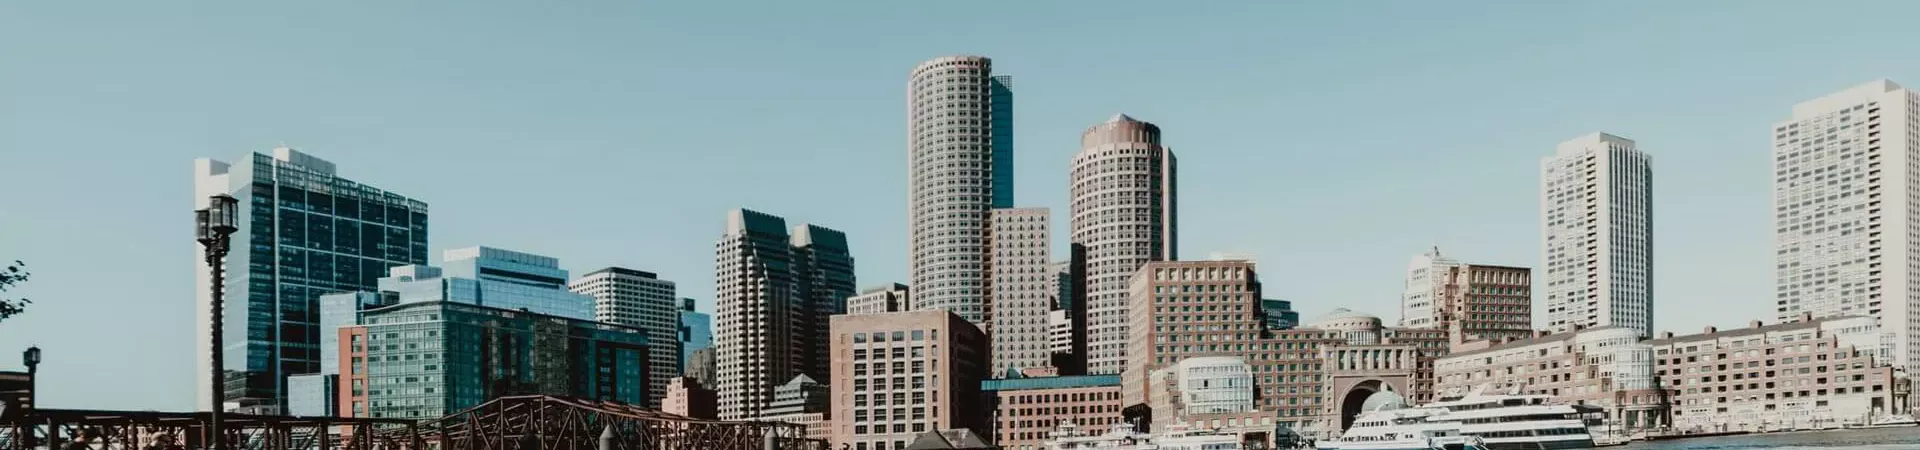 Contiki Crawl Boston city skyline